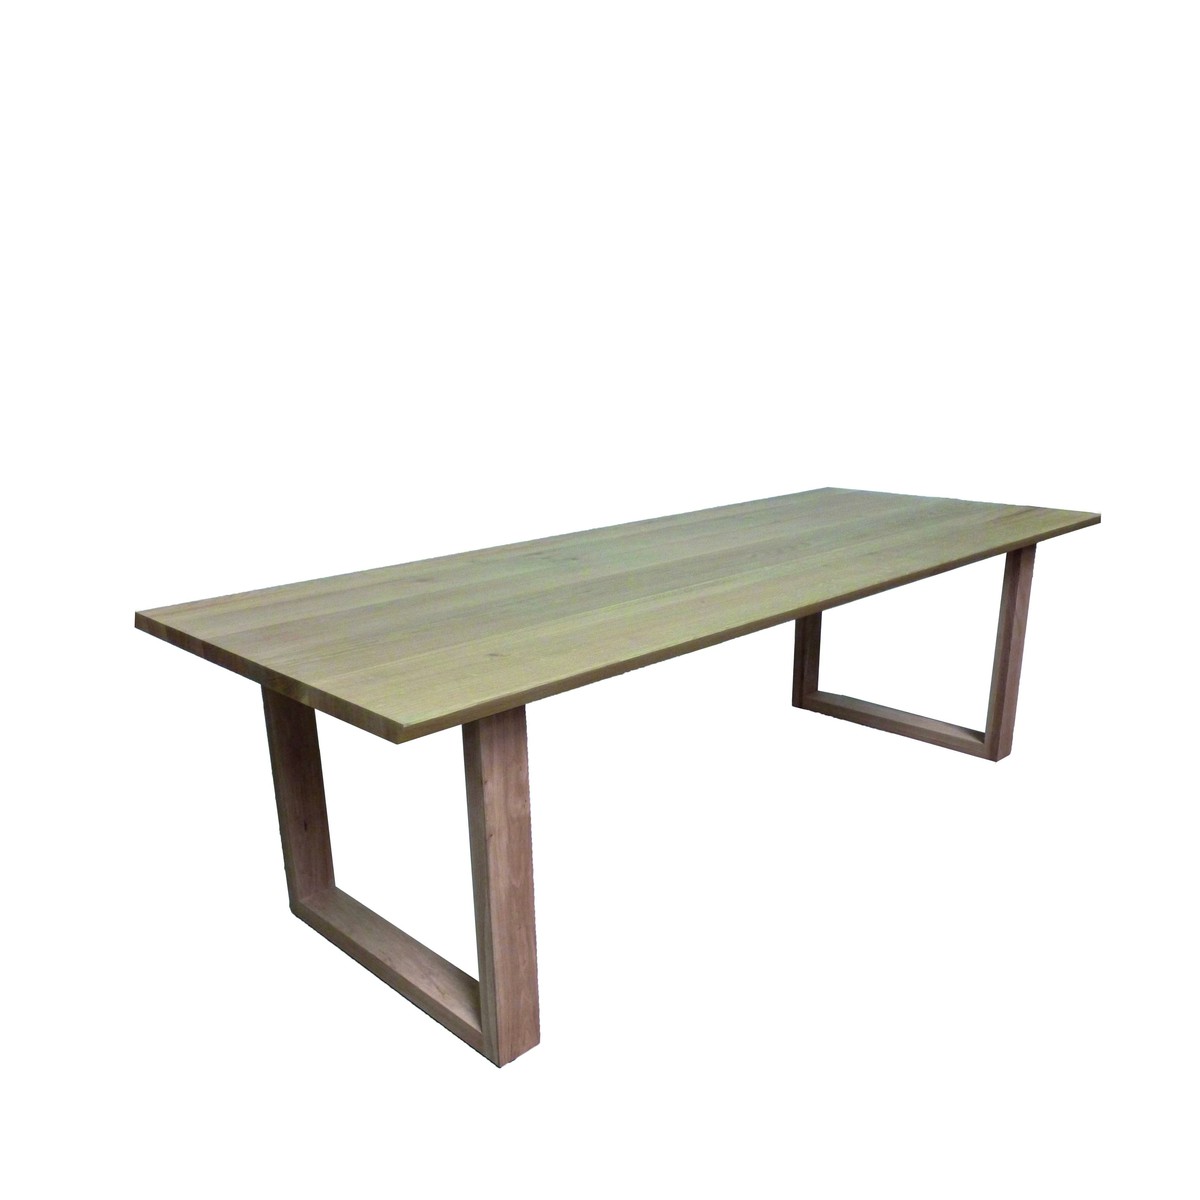   Table Carl Droit rectangulaire  160x100x77cm